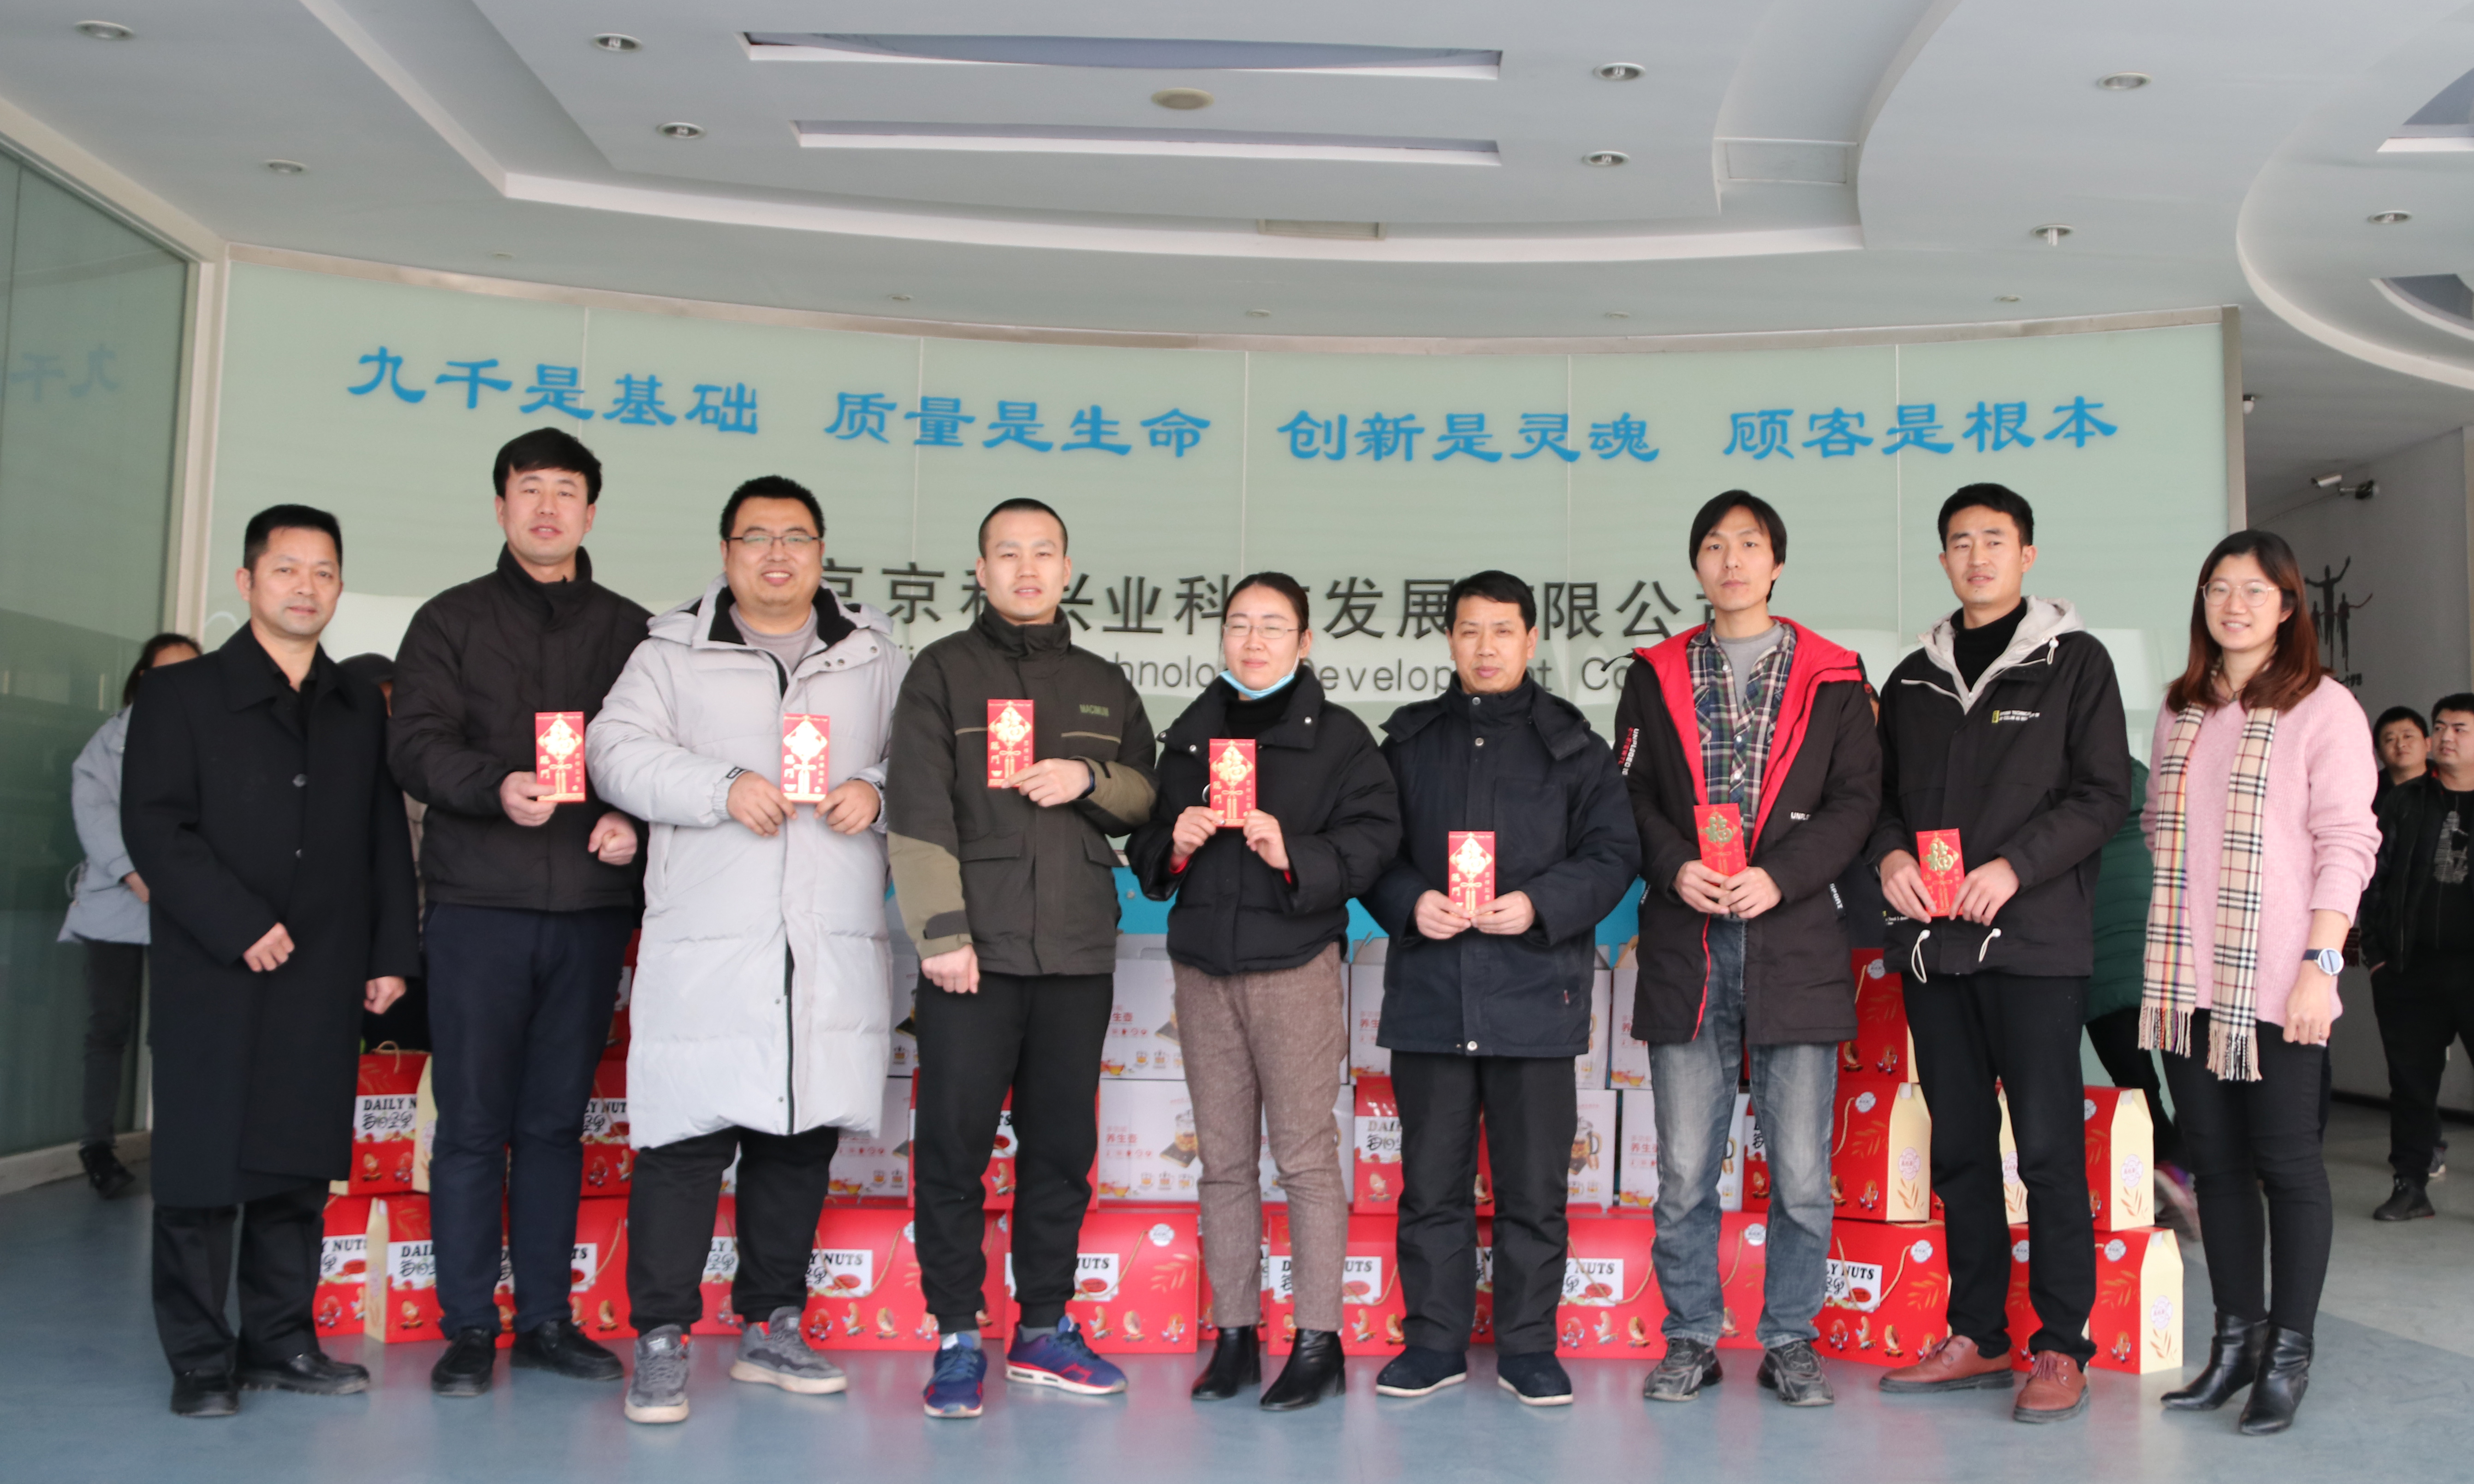 北京众赢免费计划软件国际版公司奖励专利创新并发放新年礼包